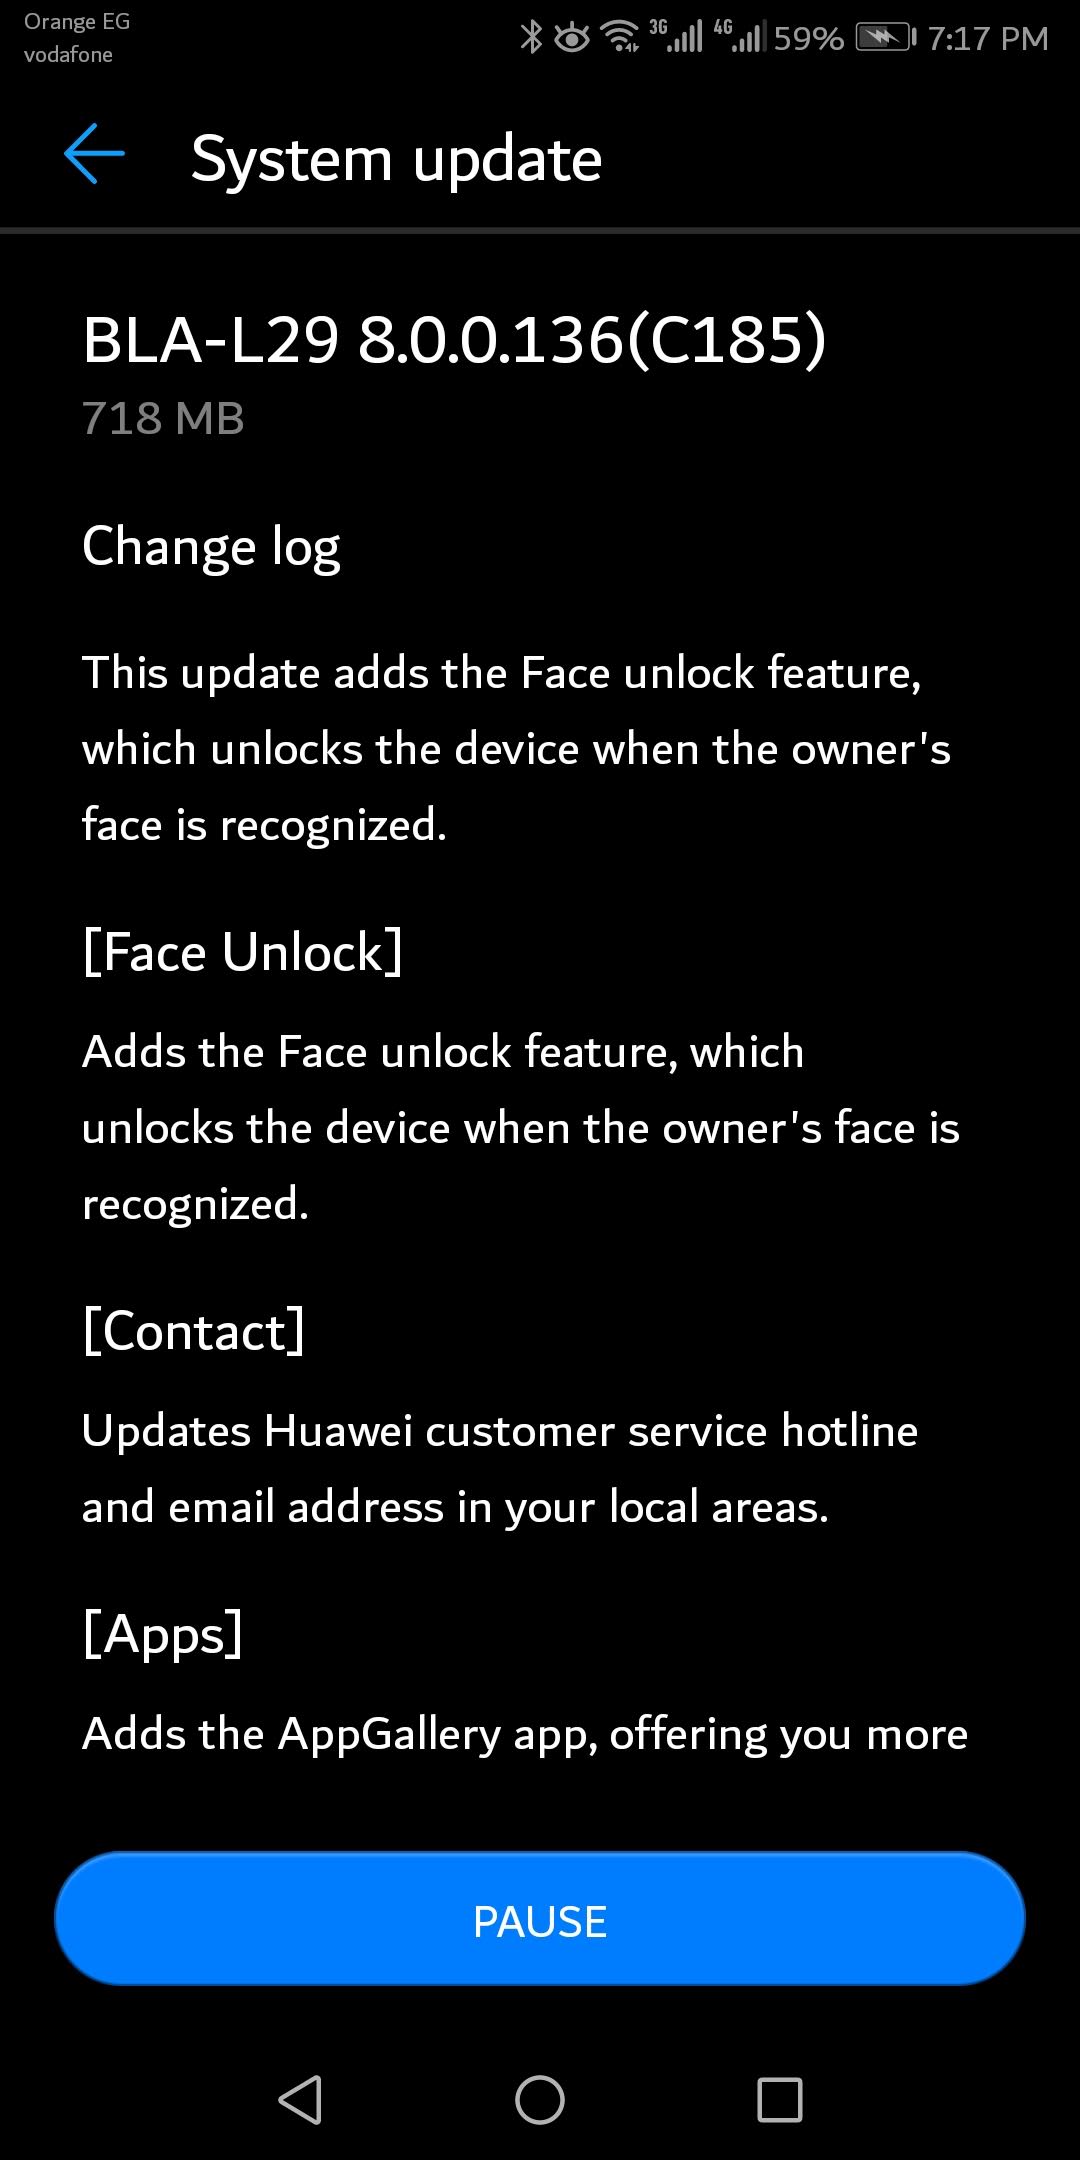 هاتف هواوي Mate 10 Pro يحصل على تقنية Face Unlock 1